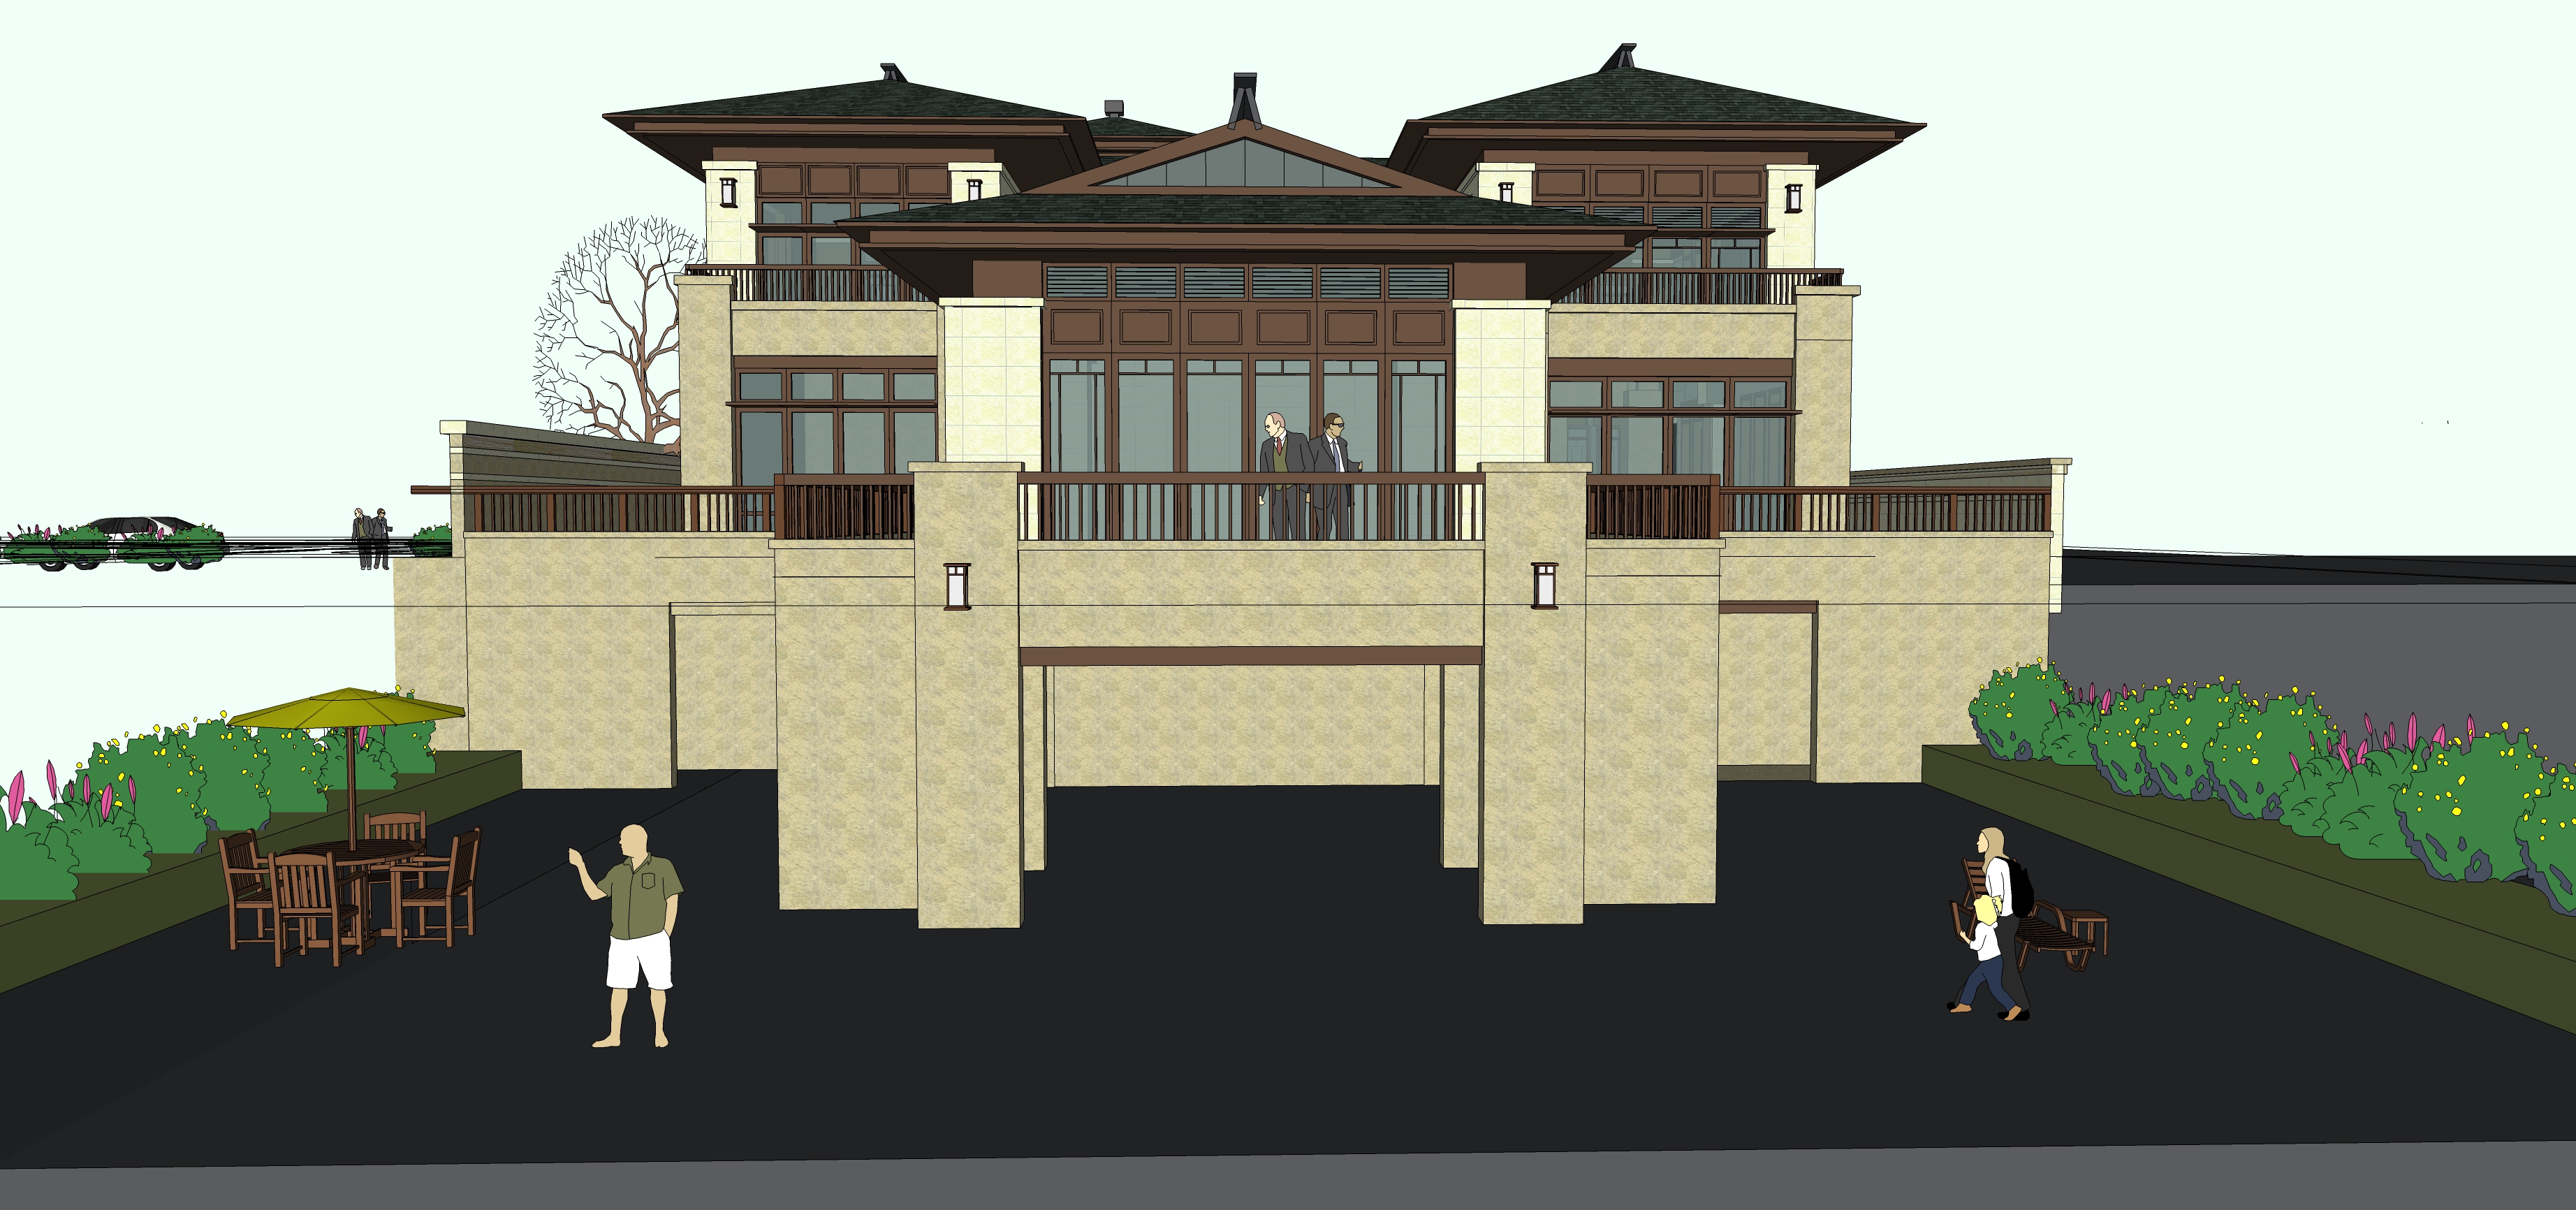 中式风格独栋别墅住宅设计方案sketchup模型